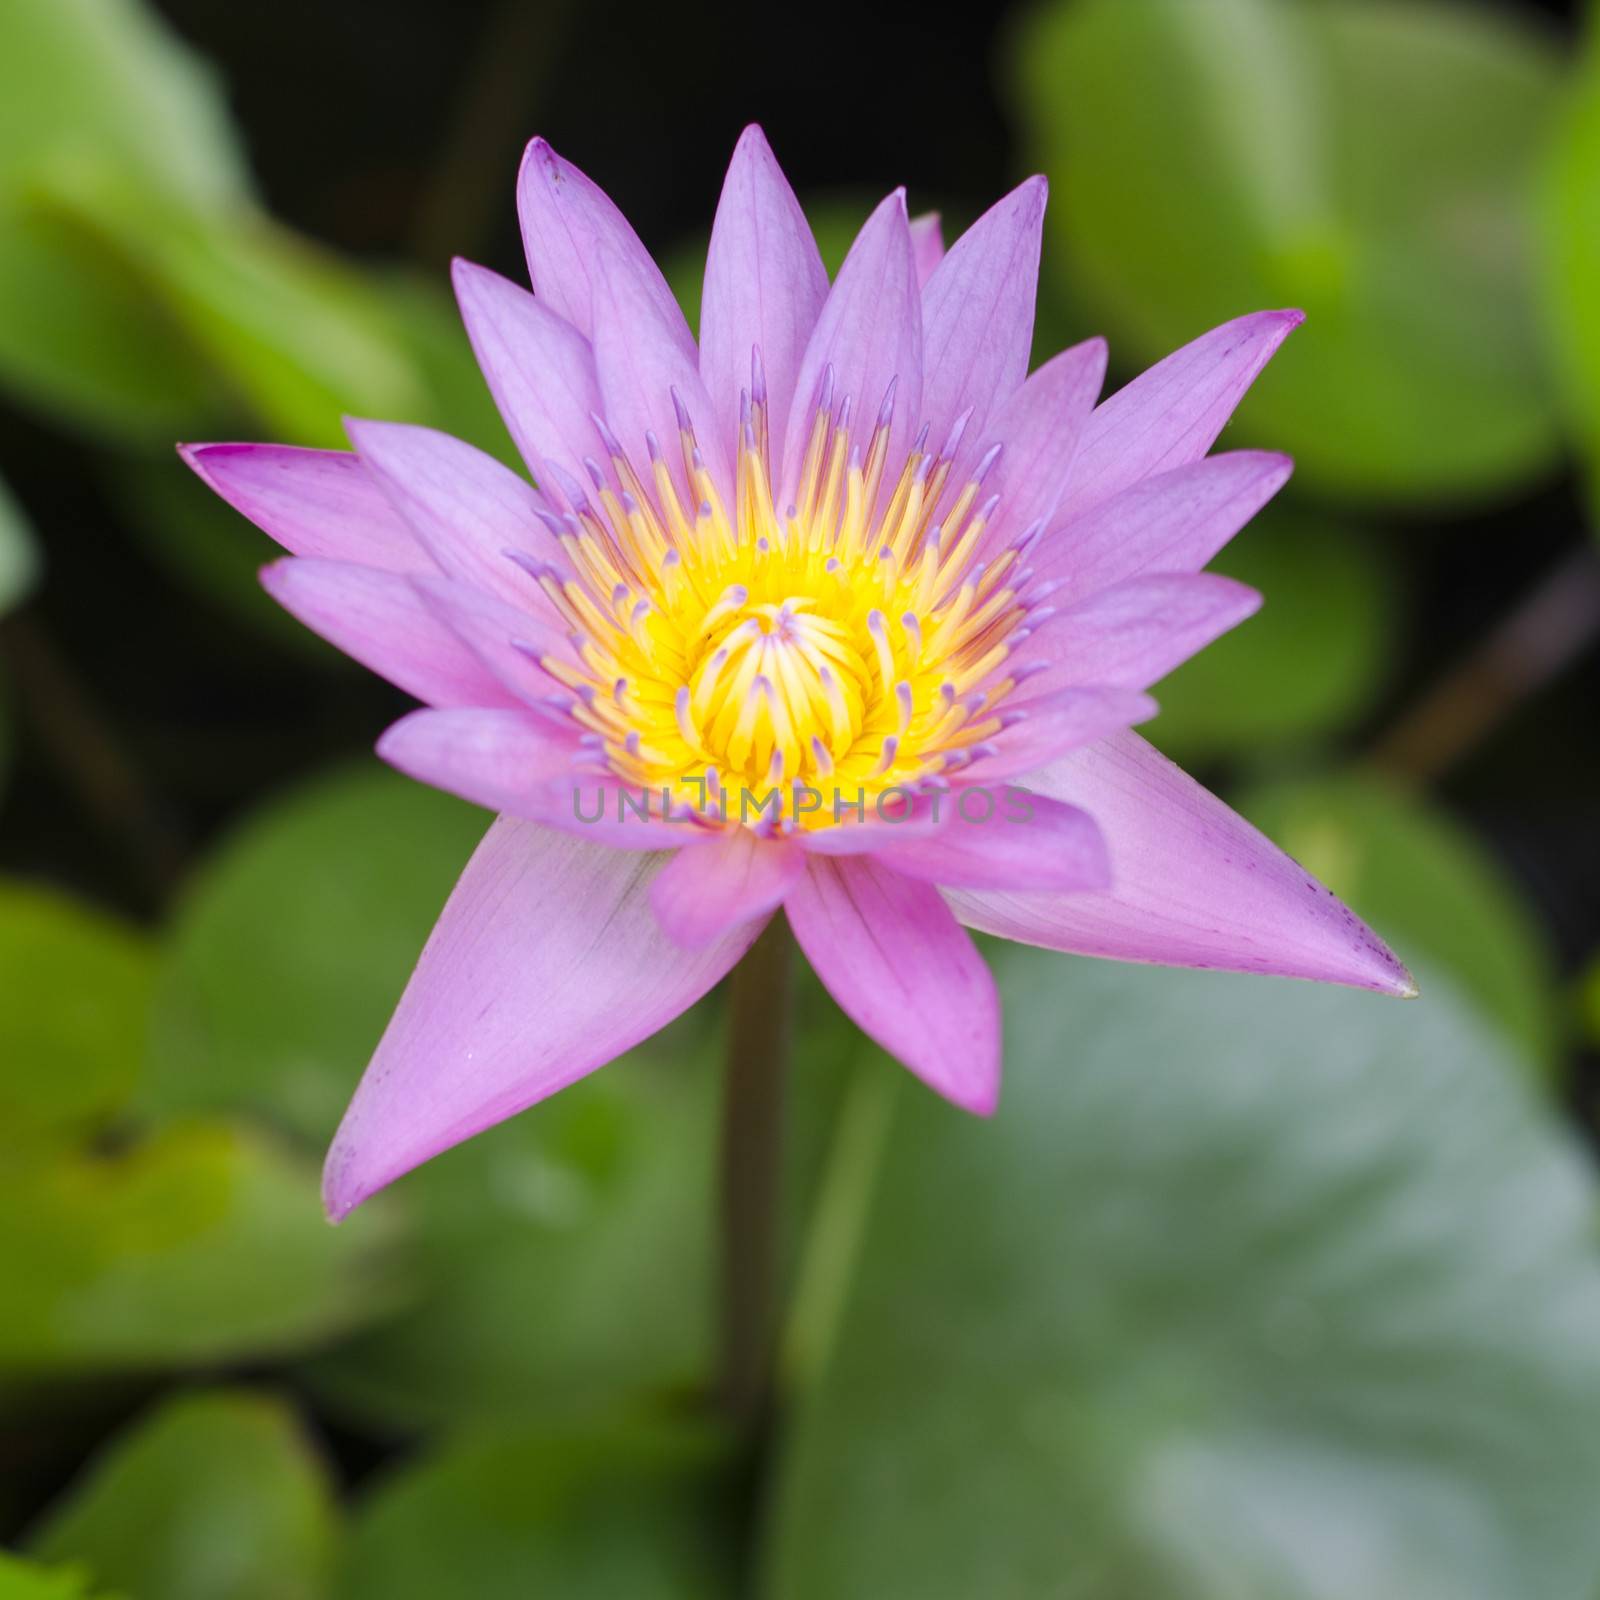 pink Lotus in pond focus on lotus